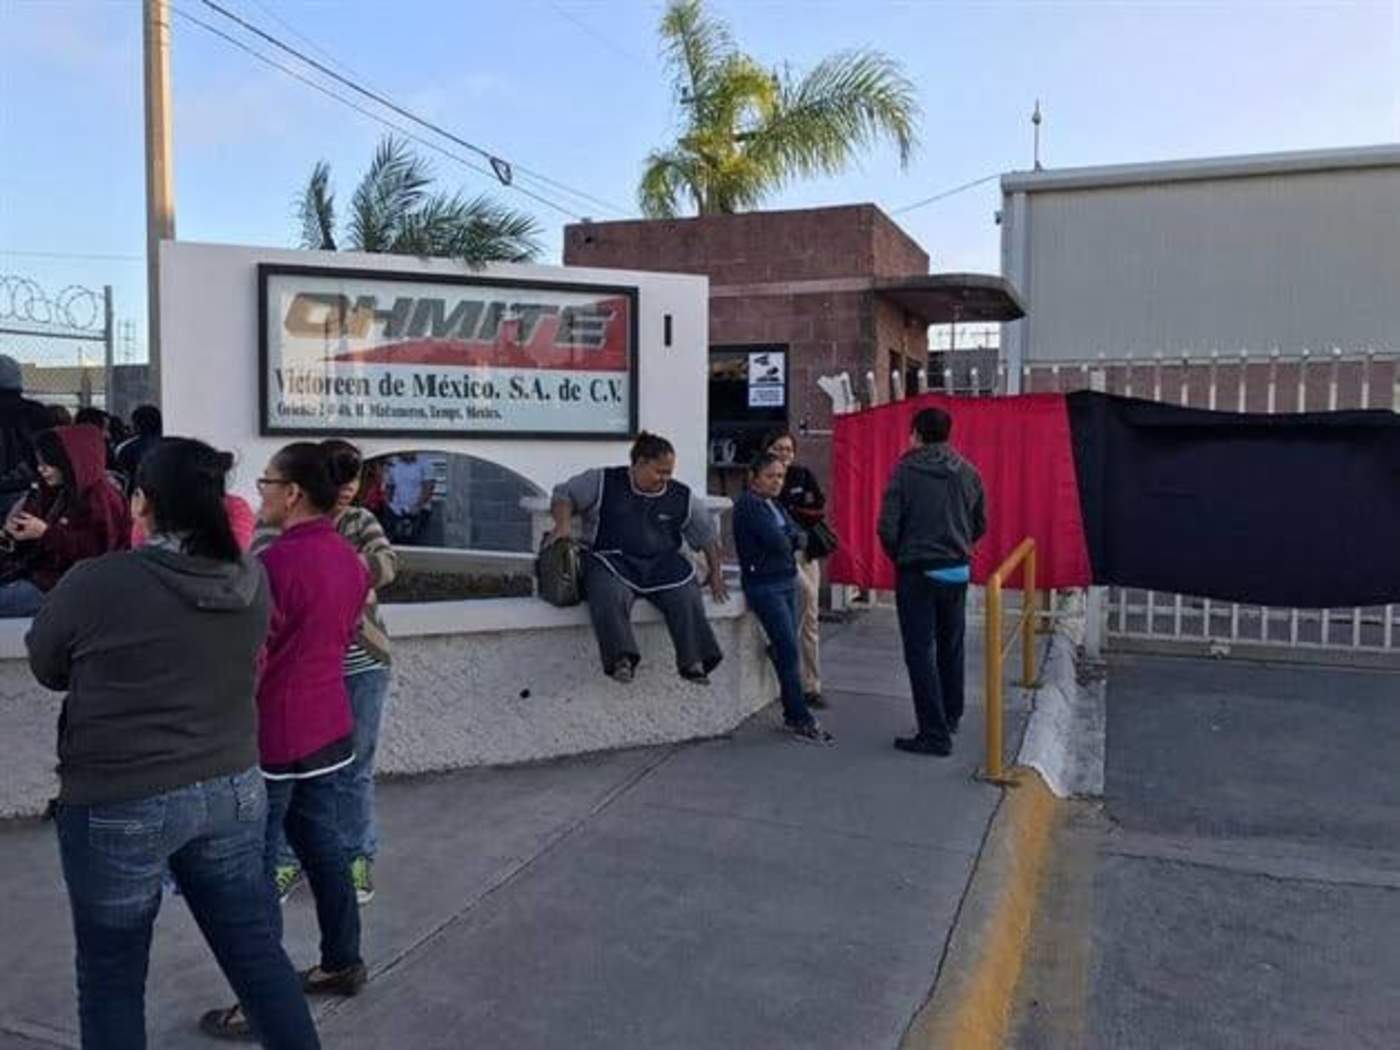 Teme la iniciativa privada que el Sindicato Minero de Napoleón Gómez Urrutia replique en Monclova los actos de desestabilización y paros ilegales como los que realizan en Tamaulipas. (EL SIGLO COAHUILA)